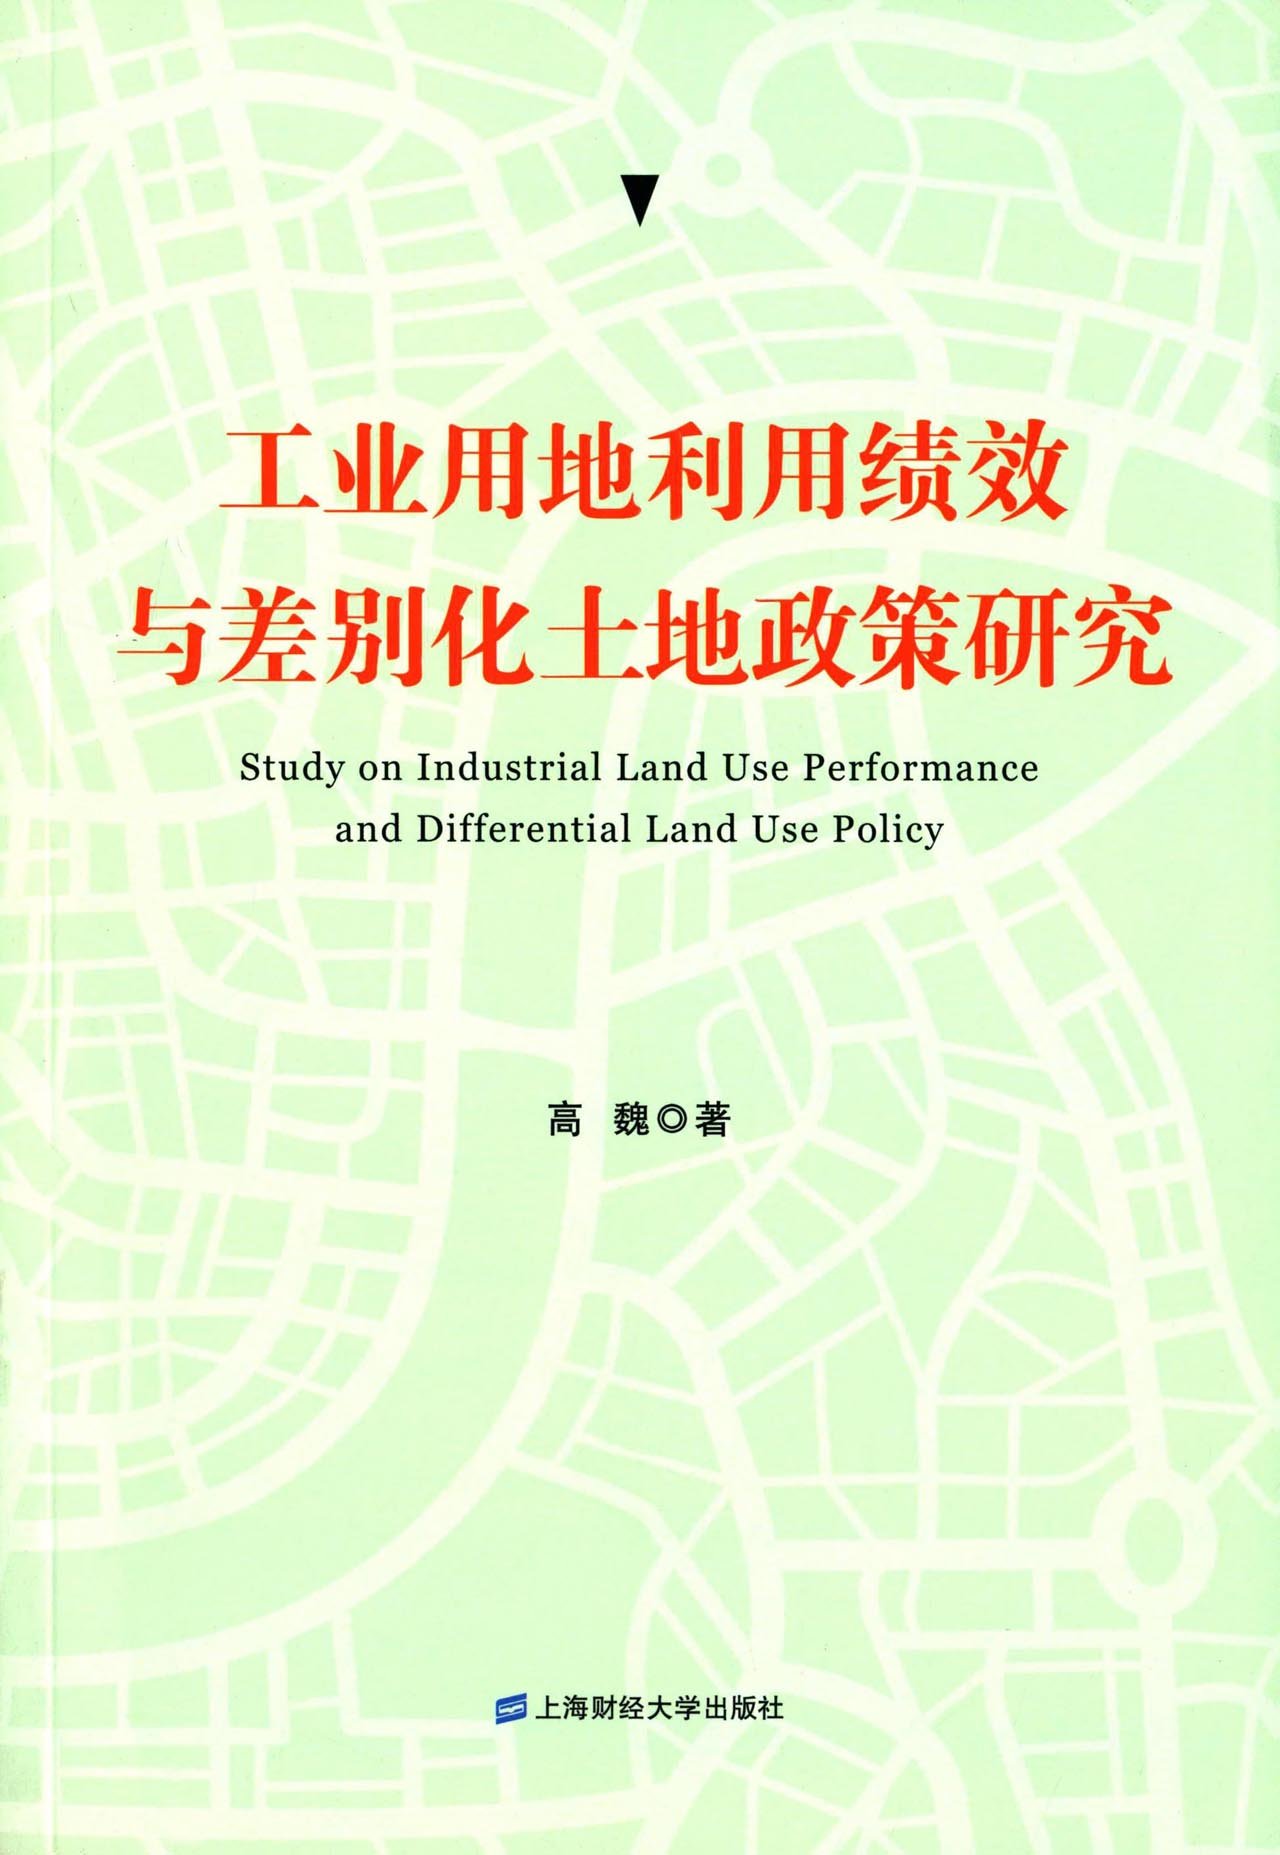 工业用地利用绩效与差别化土地政策研究 mobi格式下载